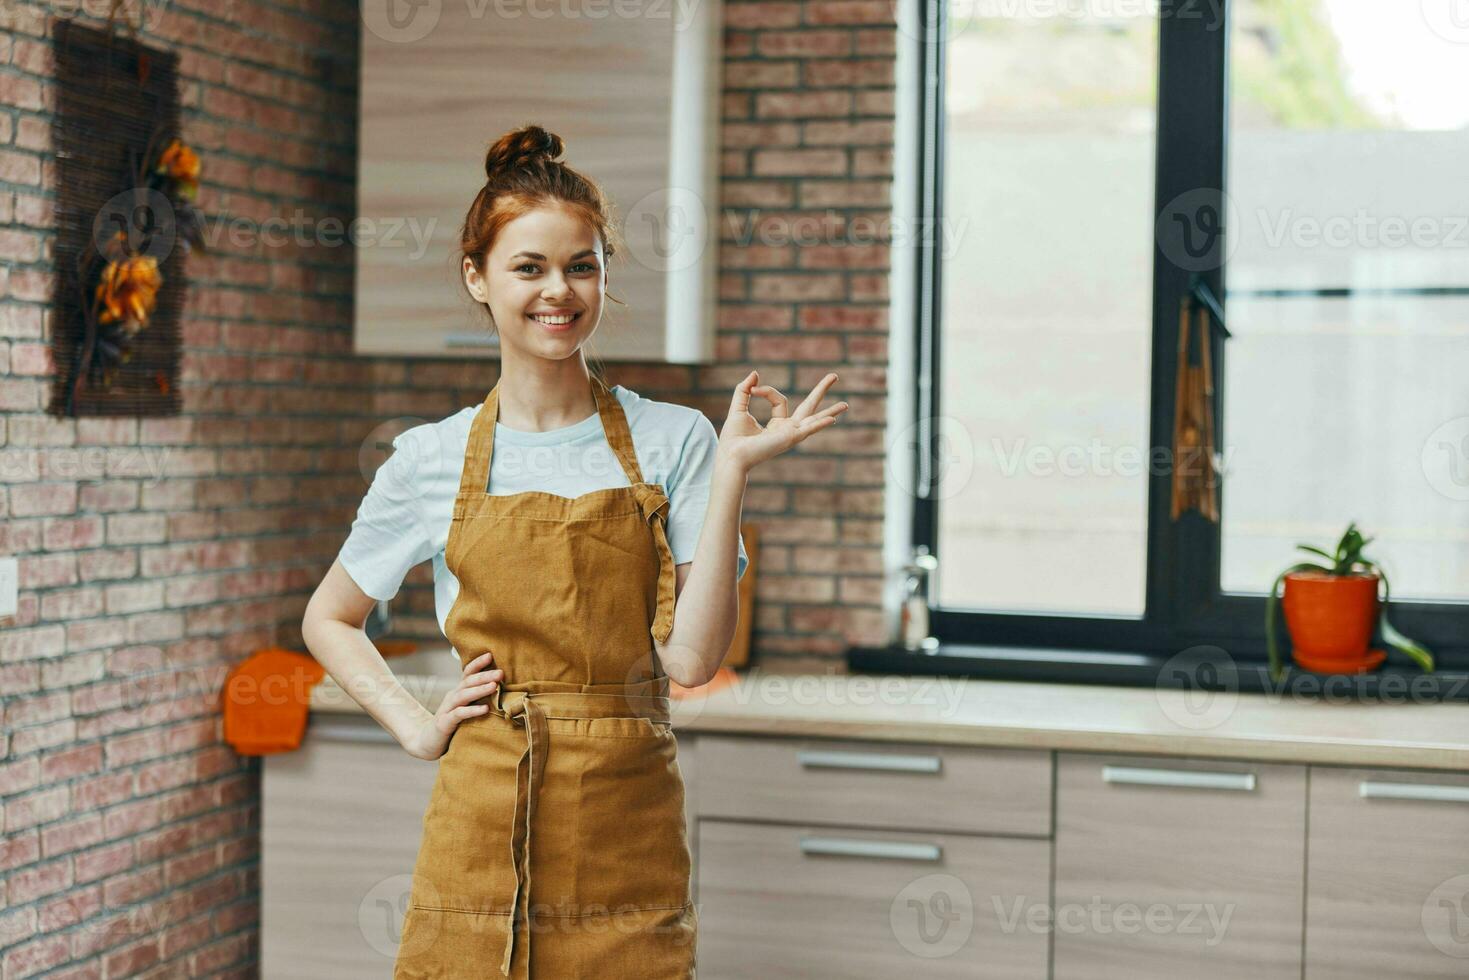 hermosa mujer en un marrón delantal cocina interior estilo de vida 23666553  Foto de stock en Vecteezy